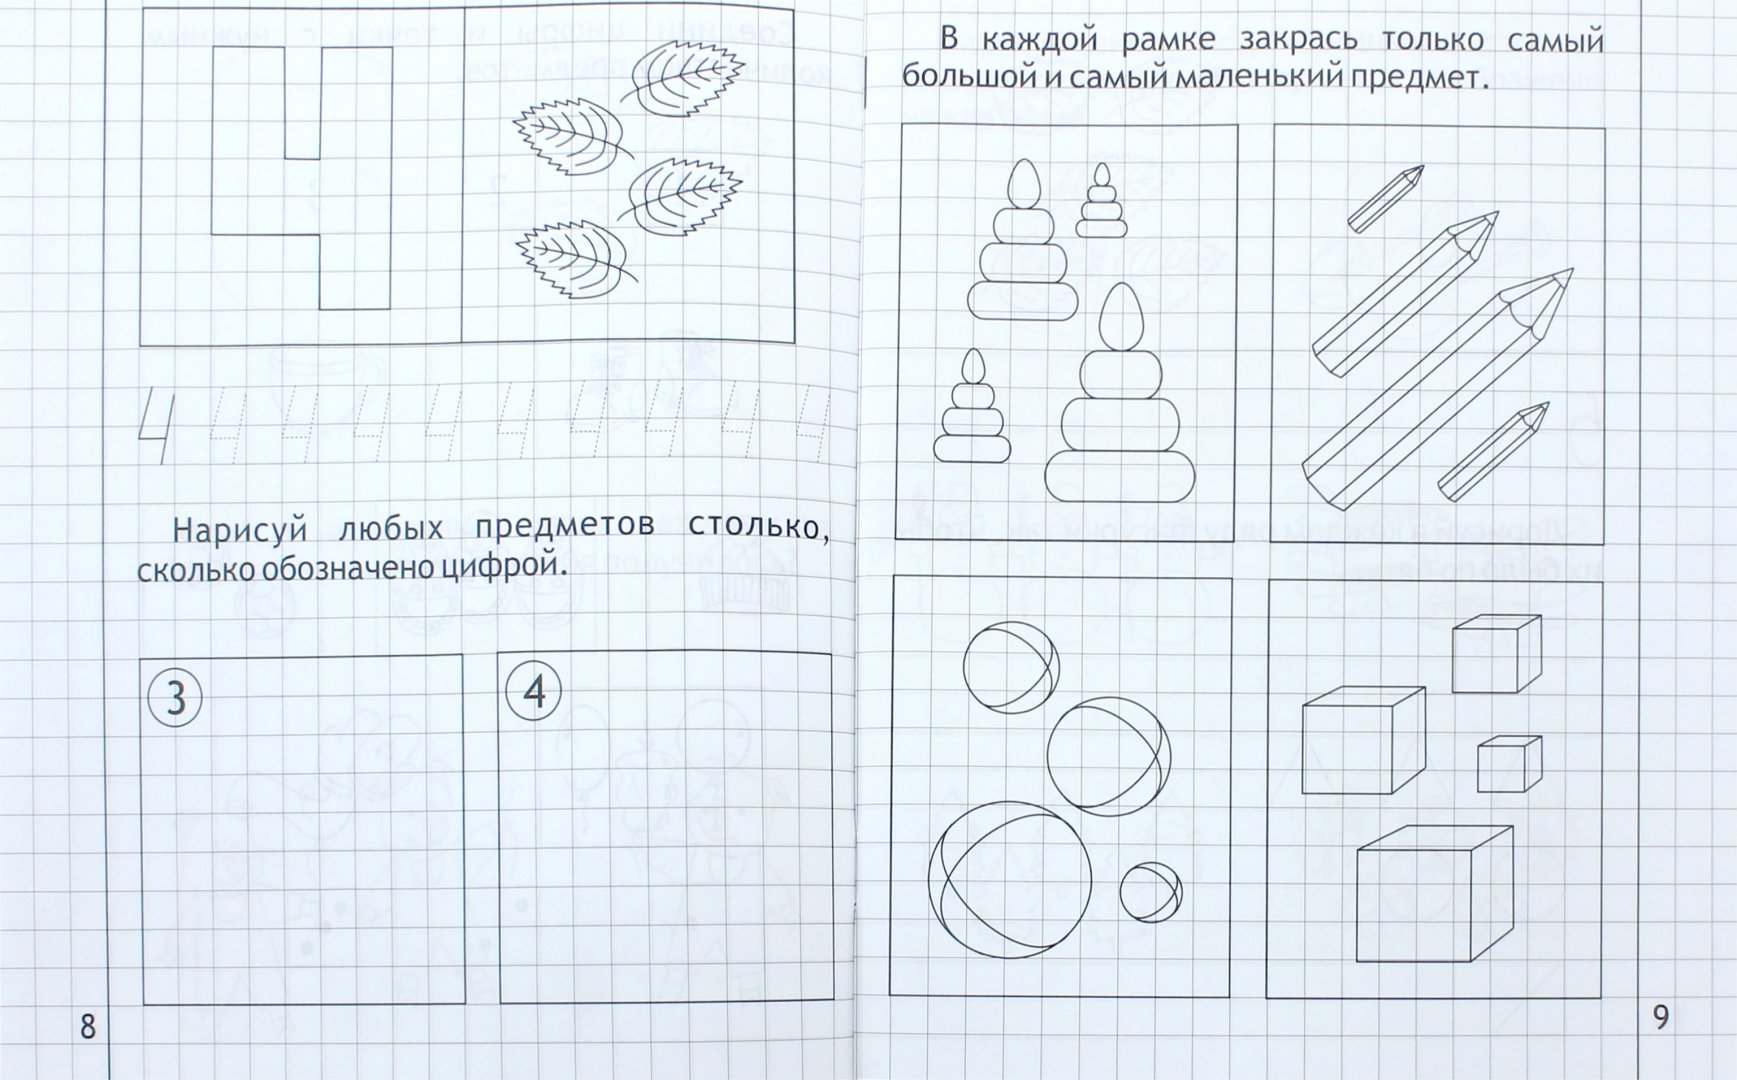 Иллюстрация 1 из 9 для Математика малышам. Часть 2. Тетрадь. Солнечные ступеньки | Лабиринт - книги. Источник: Лабиринт